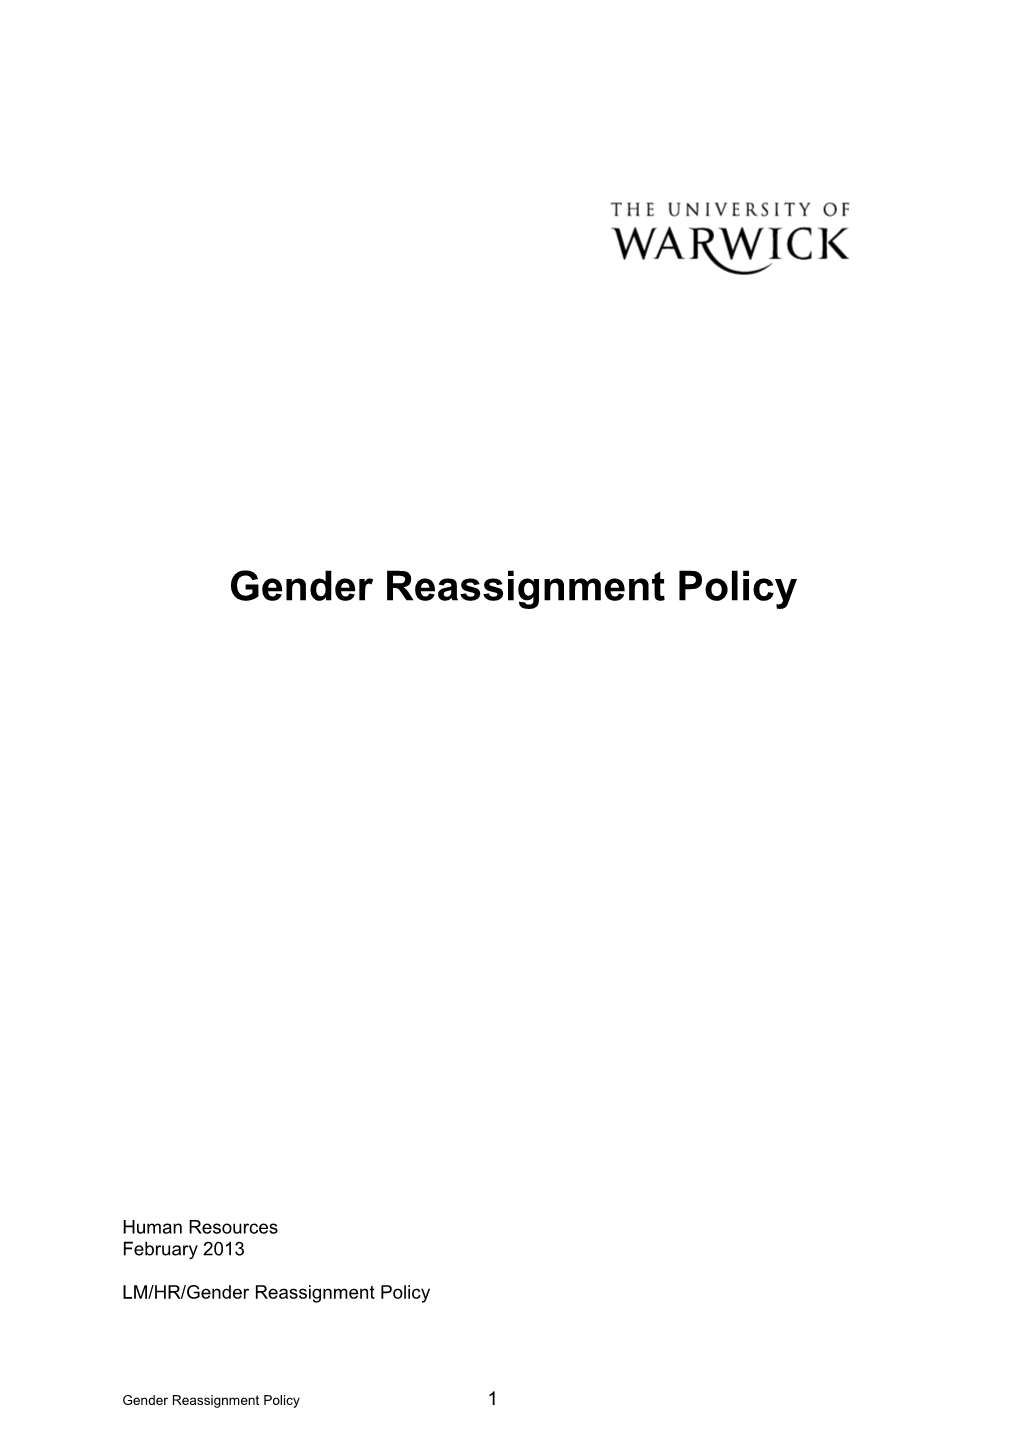 Gender Reassignmentpolicy